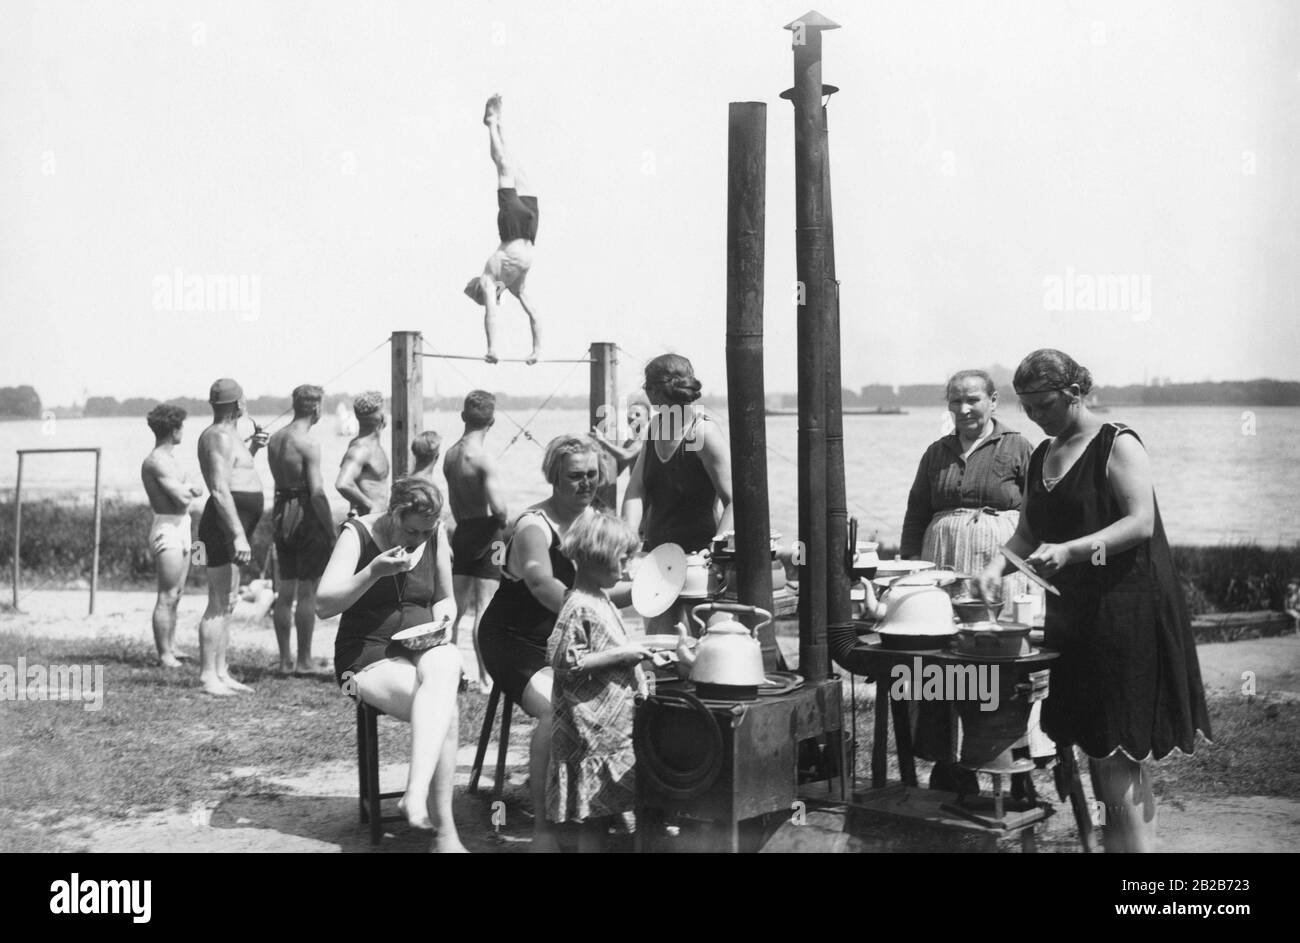 Les campeurs se rassemblent autour d'une zone de cuisson avec plusieurs fours et préparent la nourriture dans le camp de tentes Tegel au lac Tegel. Entre-temps, les hommes regardent comme l'un d'eux exercices sur une barre horizontale. Banque D'Images